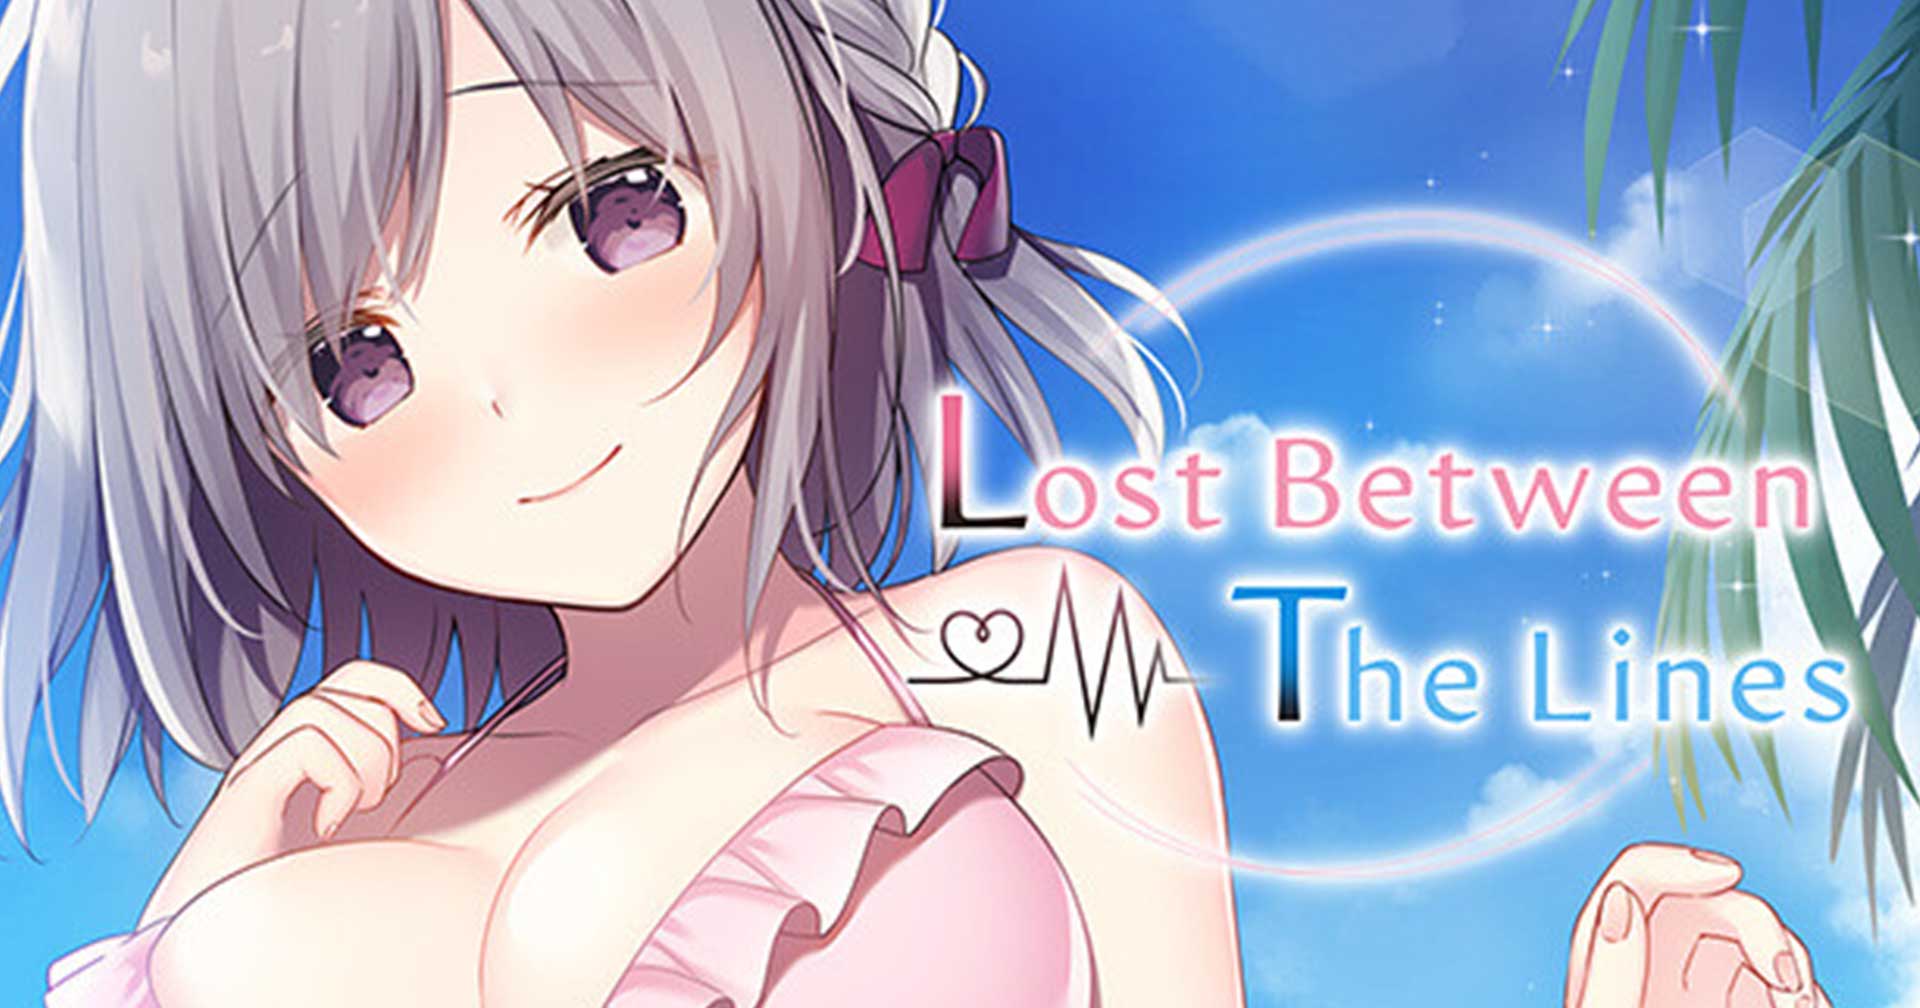 [รีวิว] Lost Between The Lines เกมจีบสาวสุดน่ารัก จากค่ายเกมเล็ก ๆ